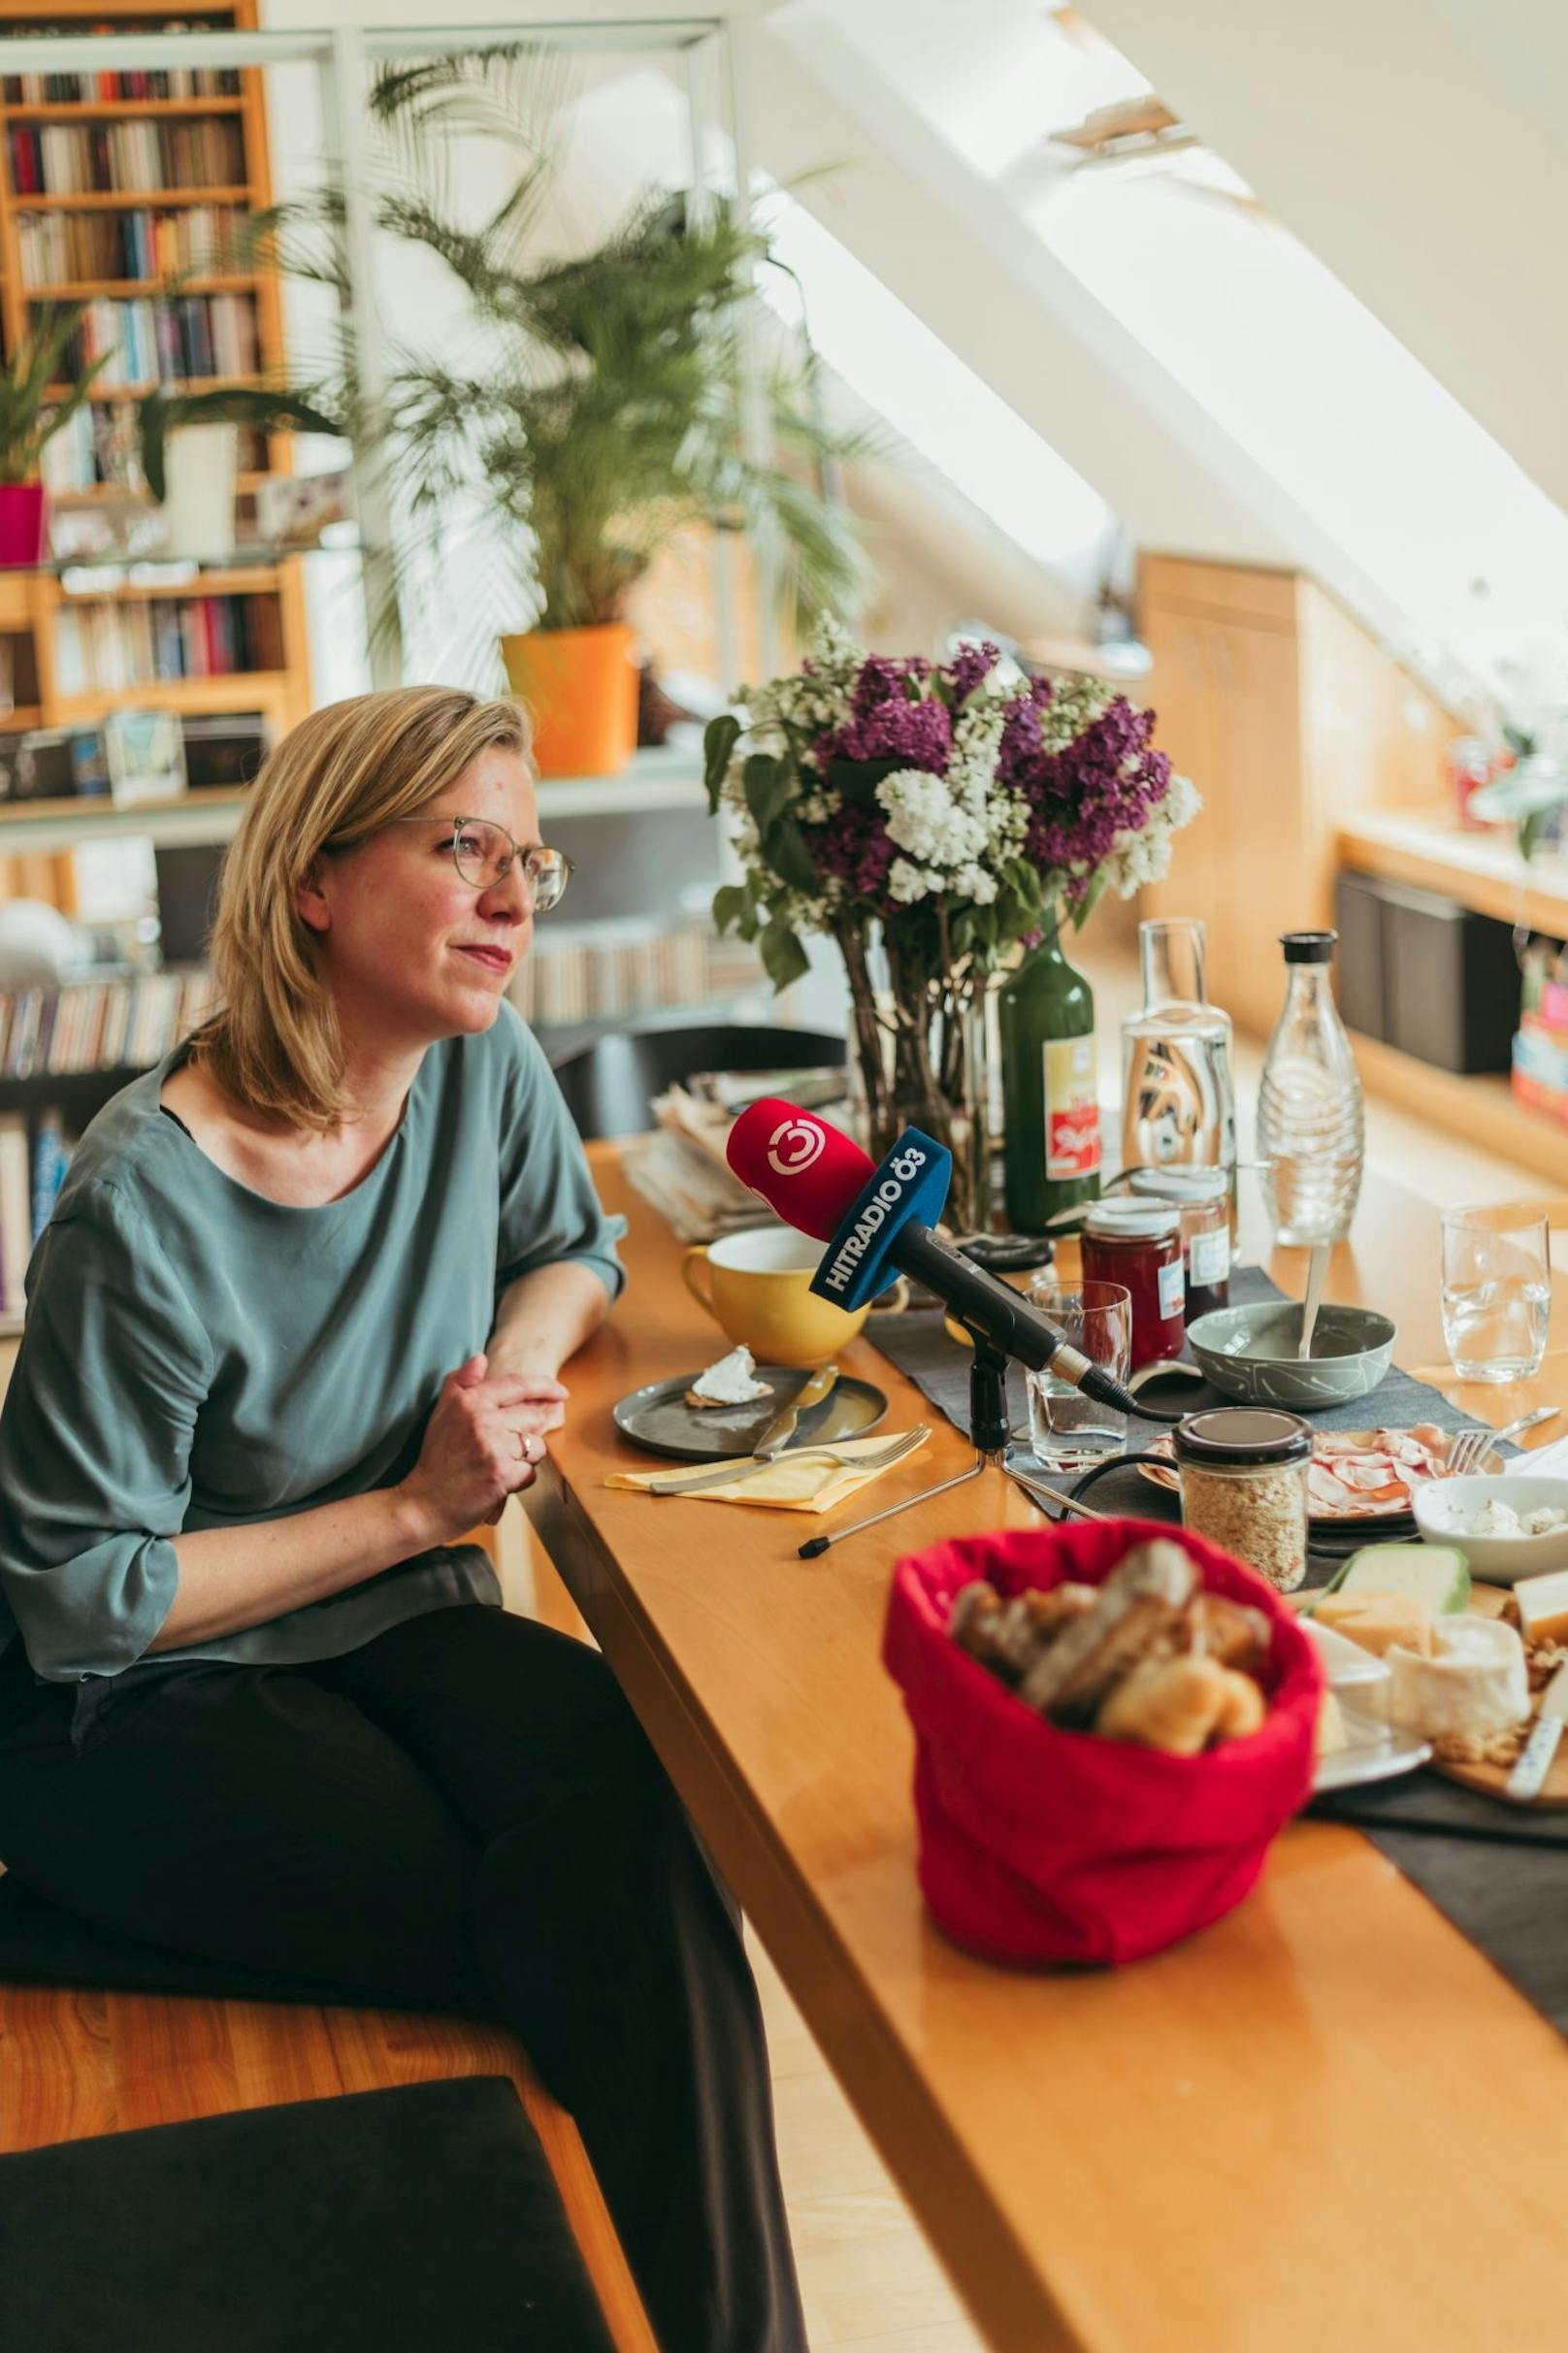 Beim Ö3-"Frühstück" mit Claudia Stöckl gewährte Umweltministerin Leonore Gewessler private Einblicke.